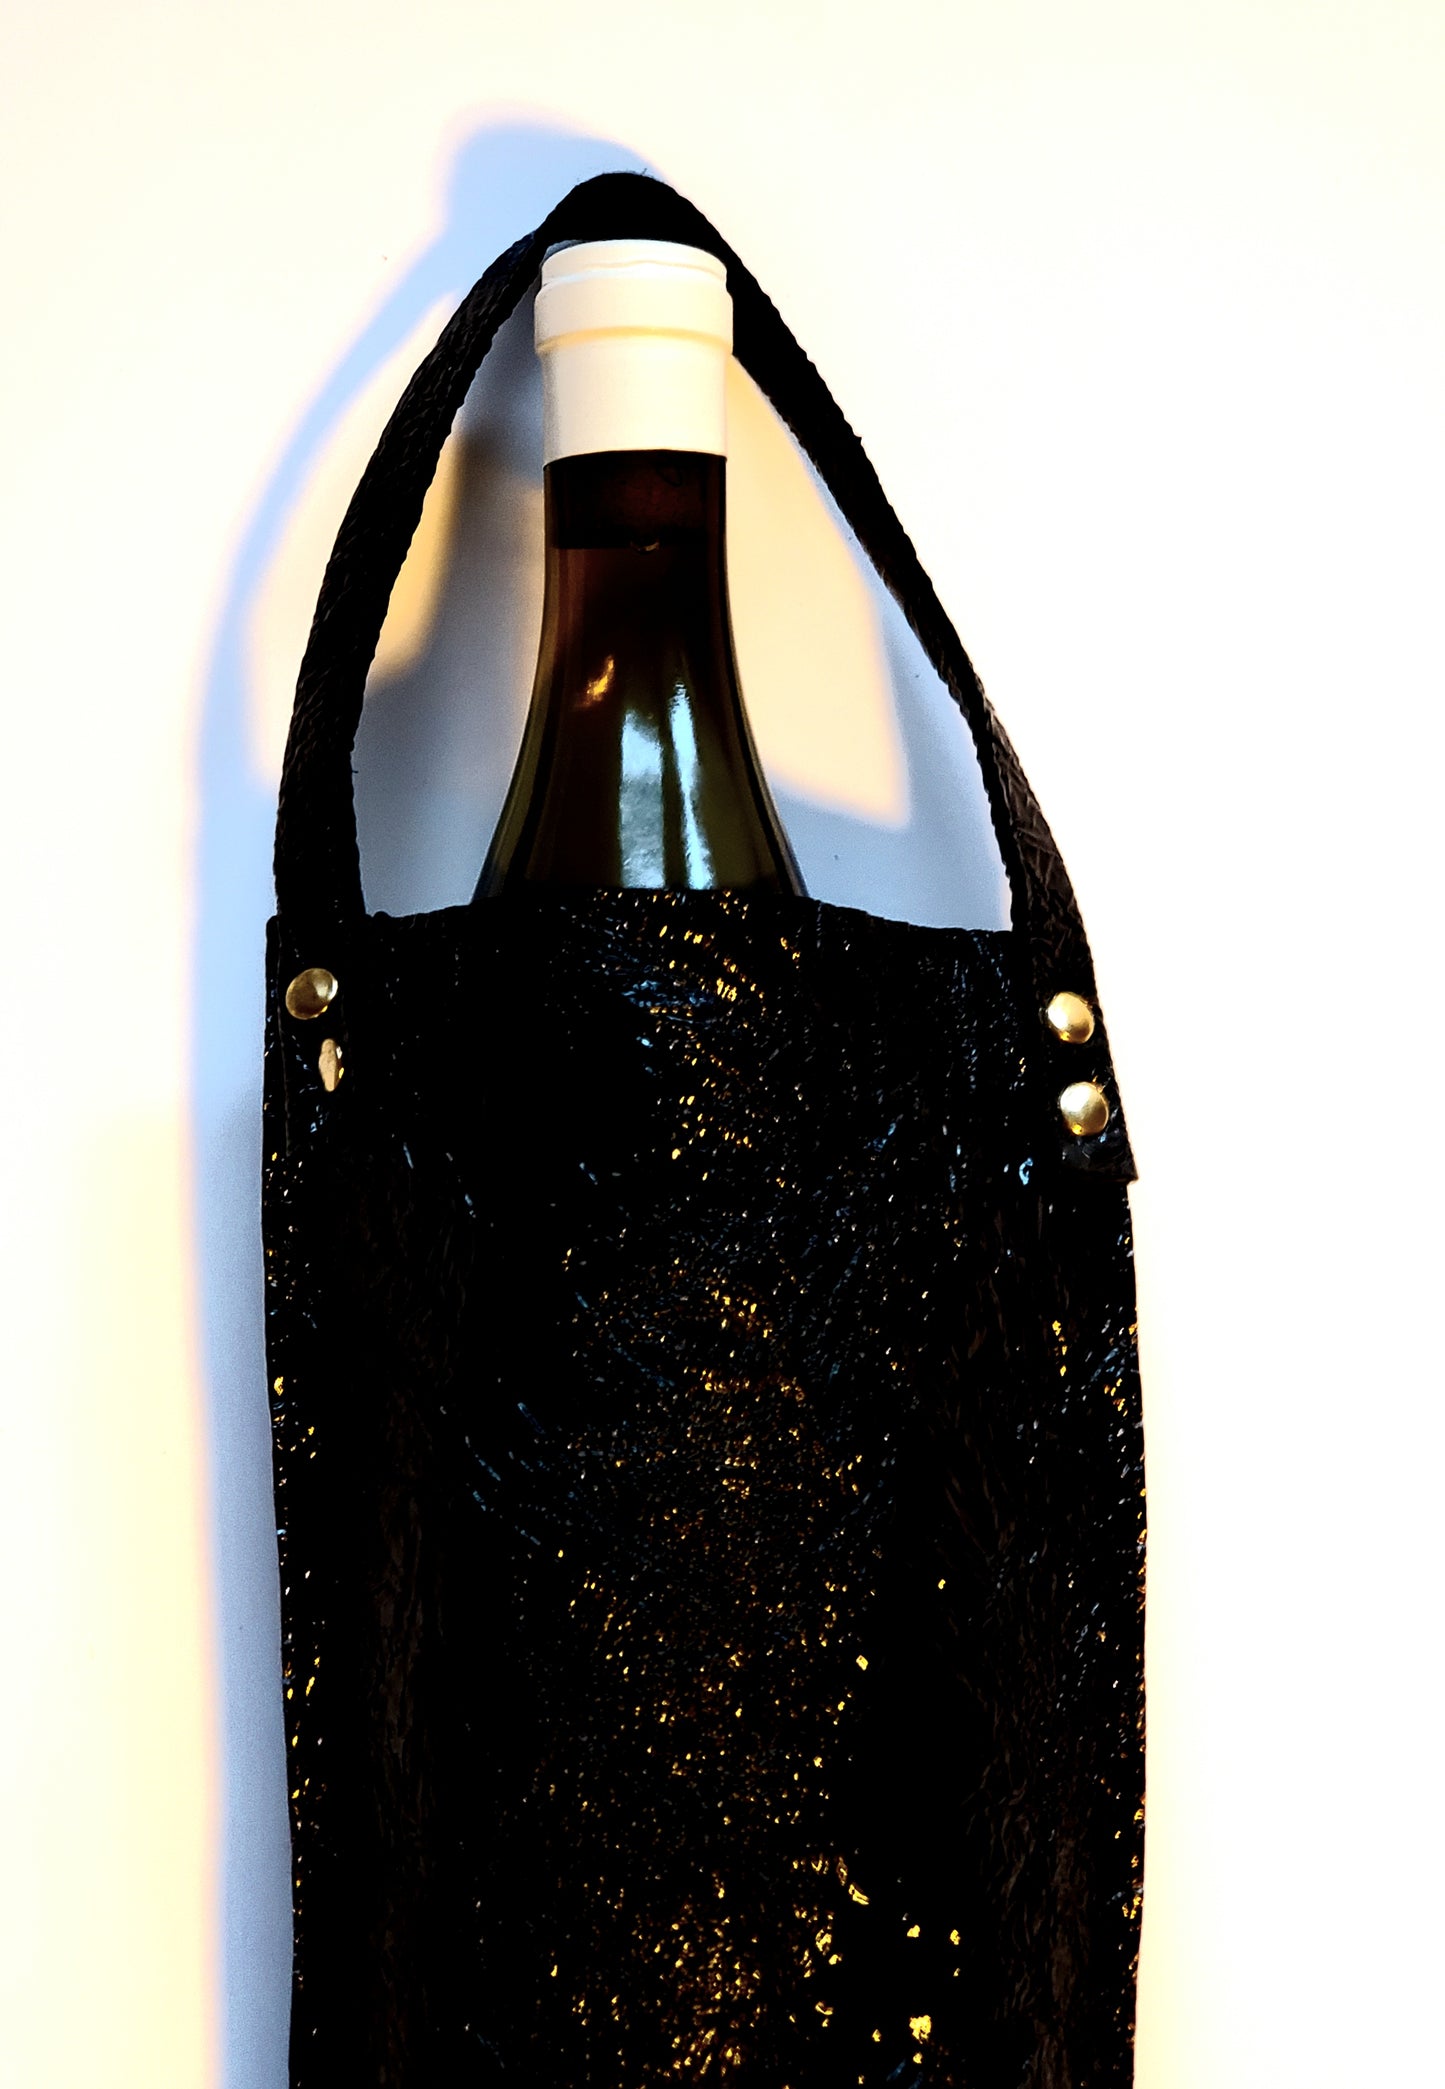 Bkack bottle bag with wine inside. Made in LA